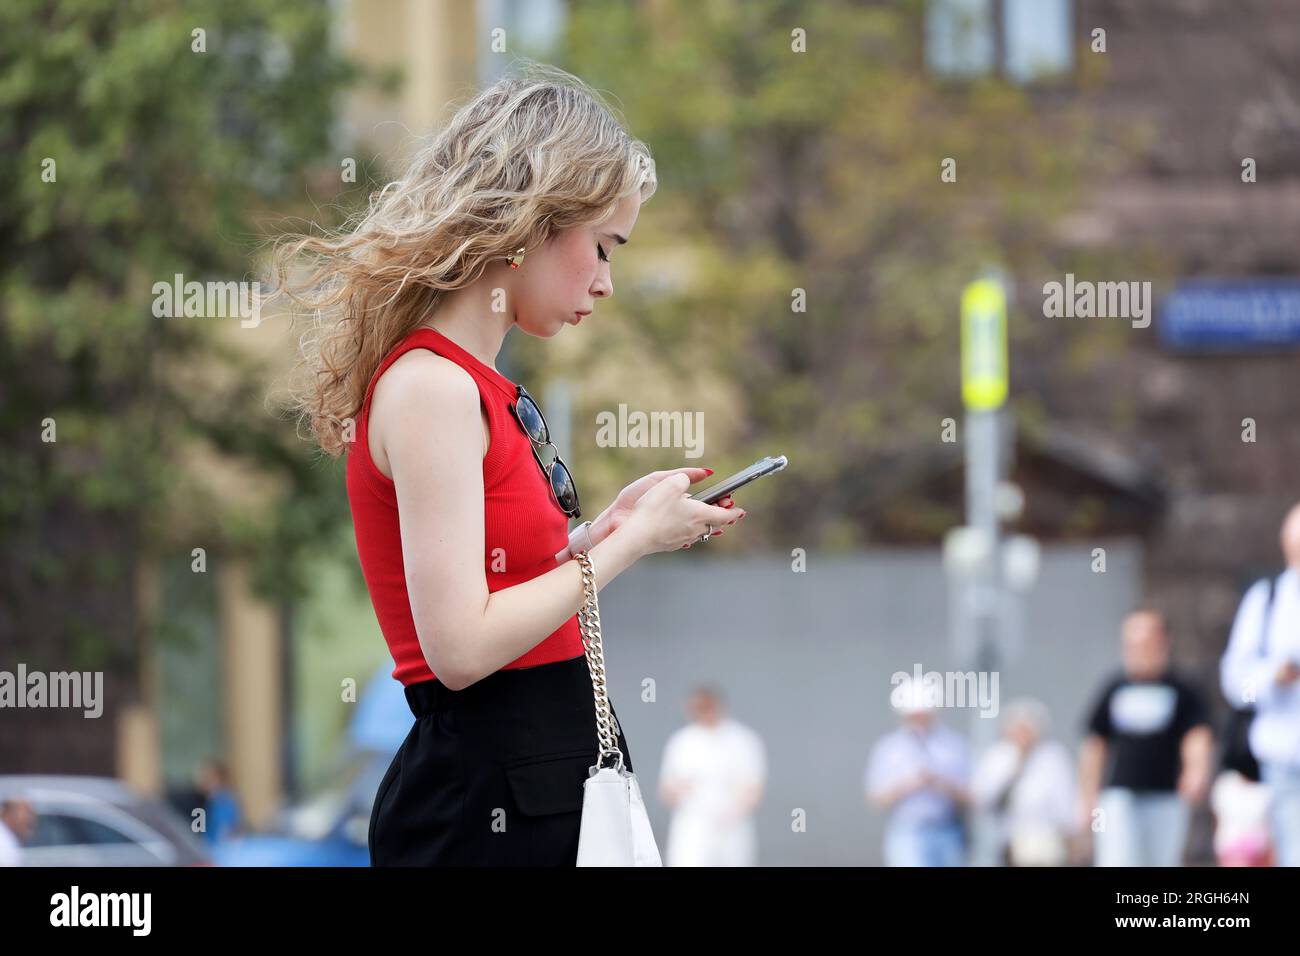 Attraktives Mädchen mit blonden Locken, das auf einer Straße mit einem Smartphone in der Hand steht und in der Sommerstadt ein Mobiltelefon benutzt Stockfoto